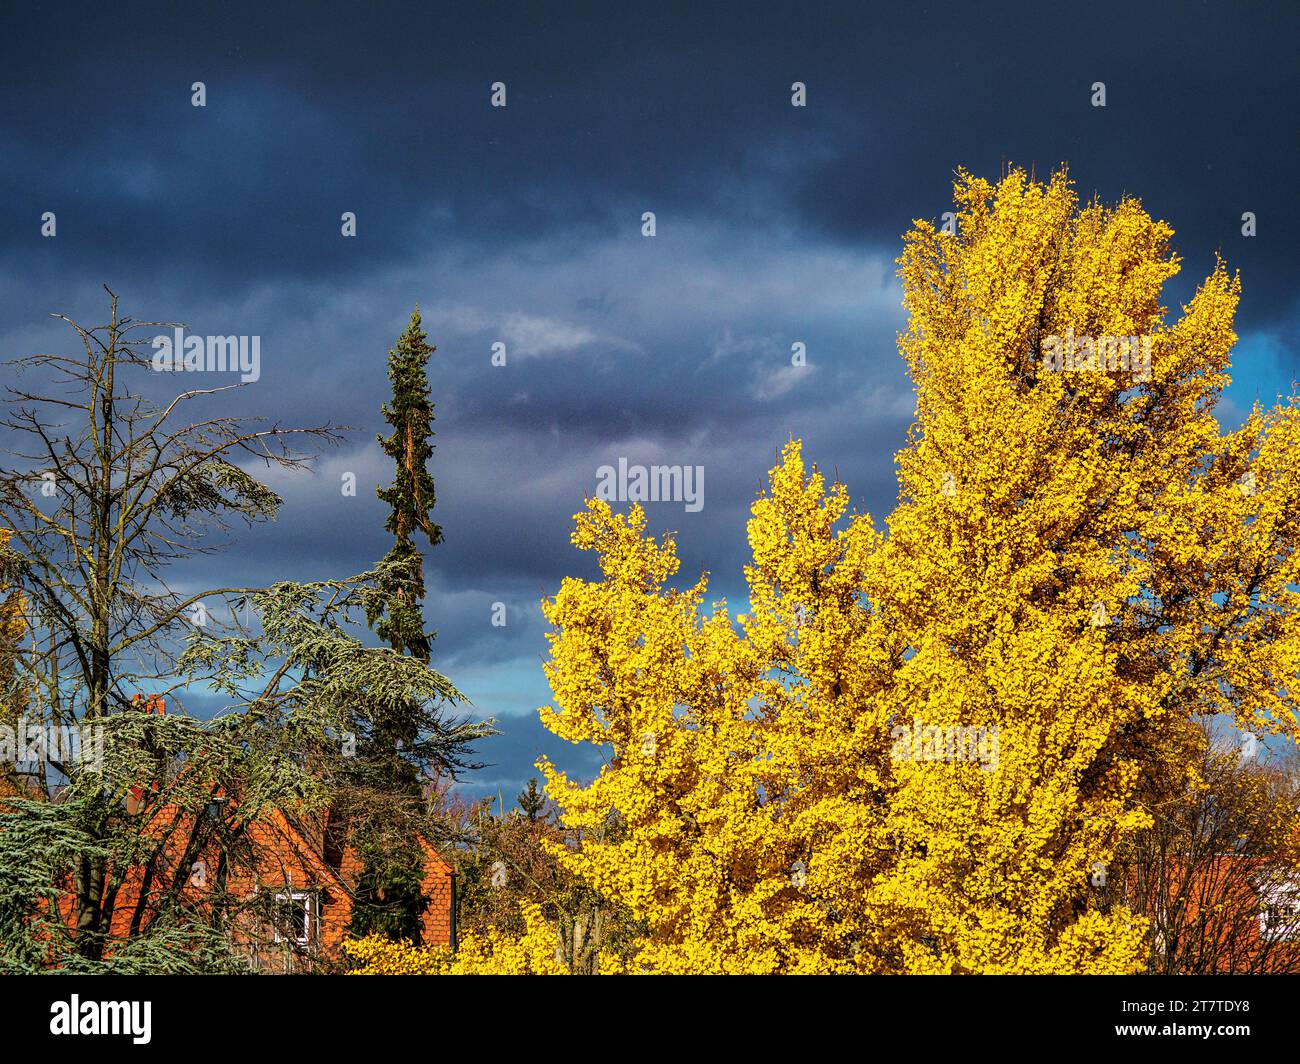 Arbre de gingos en automne au soleil pendant un orage. Feuilles des canaries jaune vif. Banque D'Images